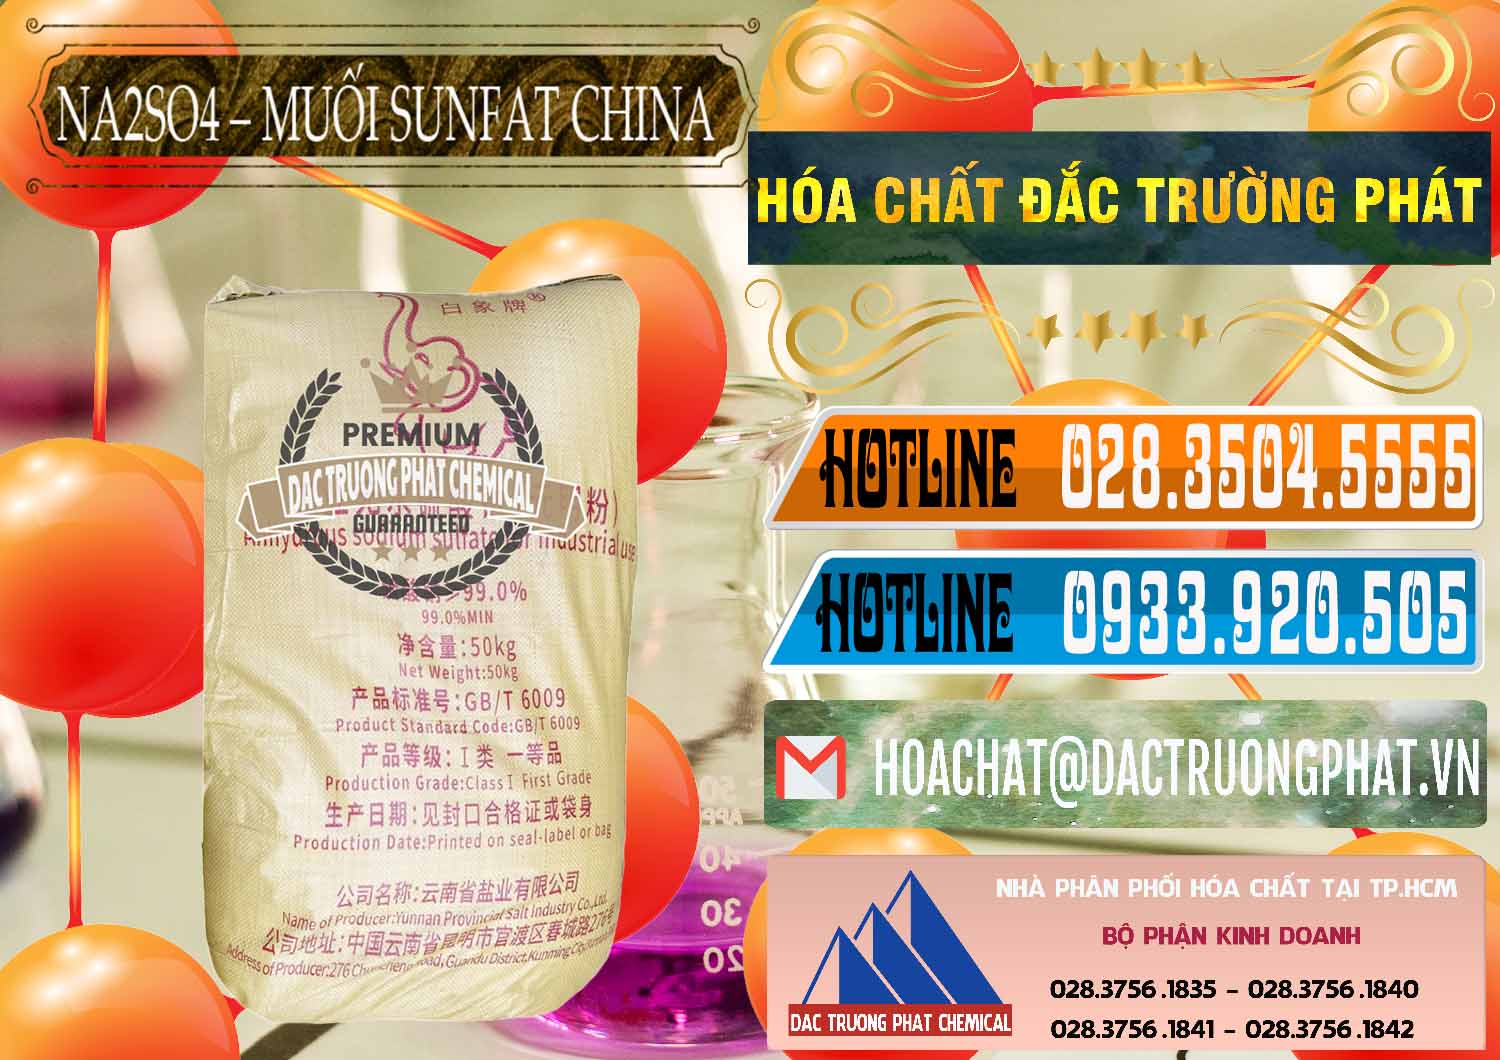 Chuyên bán - phân phối Sodium Sulphate - Muối Sunfat Na2SO4 Logo Con Voi Trung Quốc China - 0409 - Đơn vị chuyên kinh doanh _ cung cấp hóa chất tại TP.HCM - stmp.net